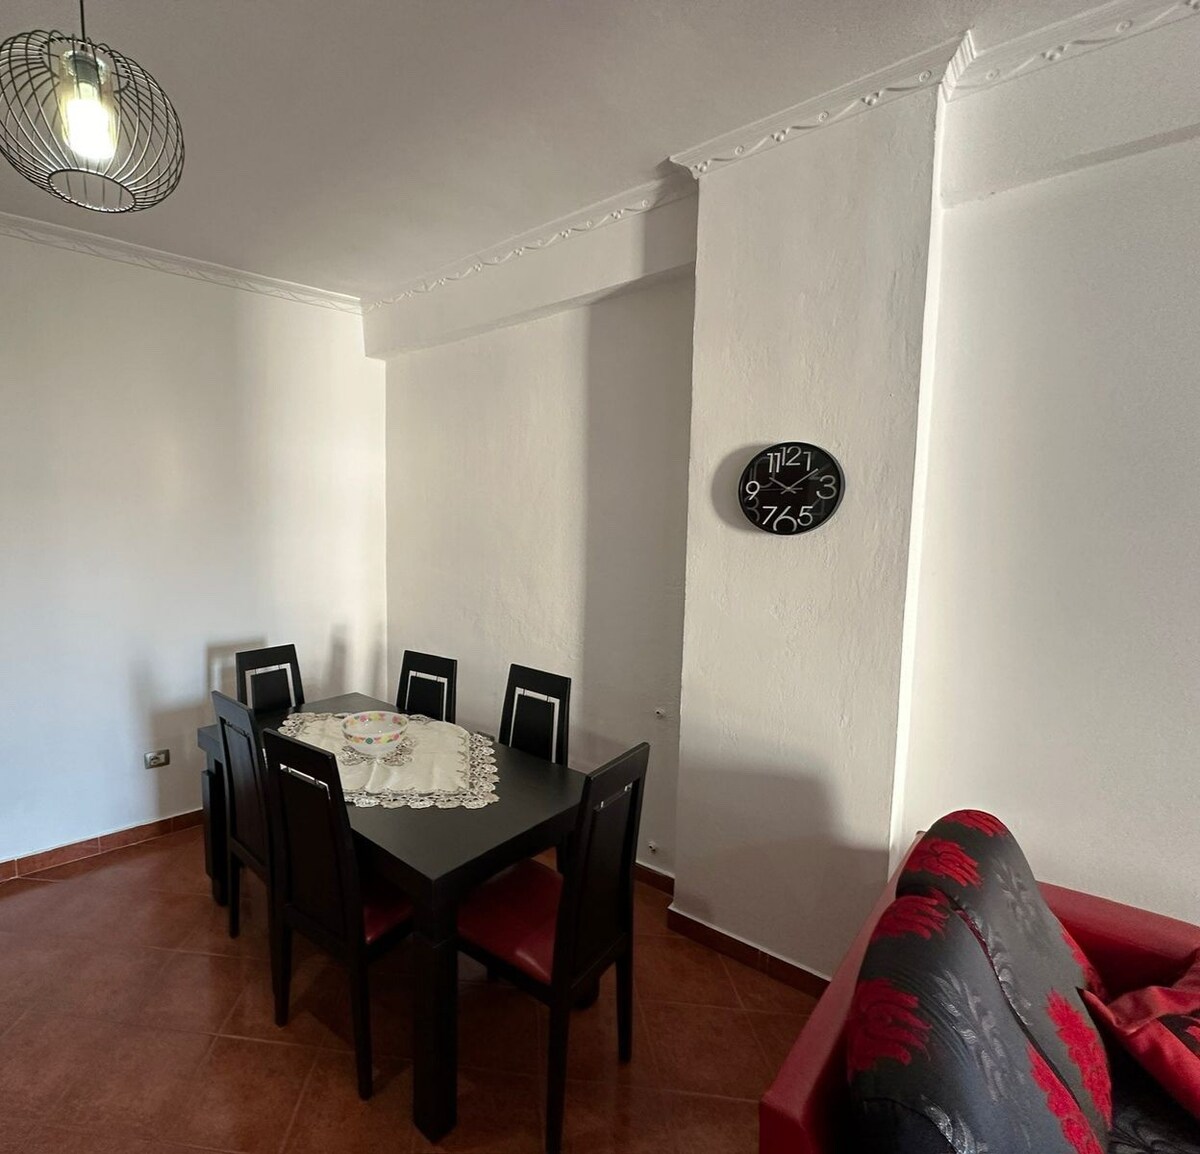 Super comfy apartment in Tirana